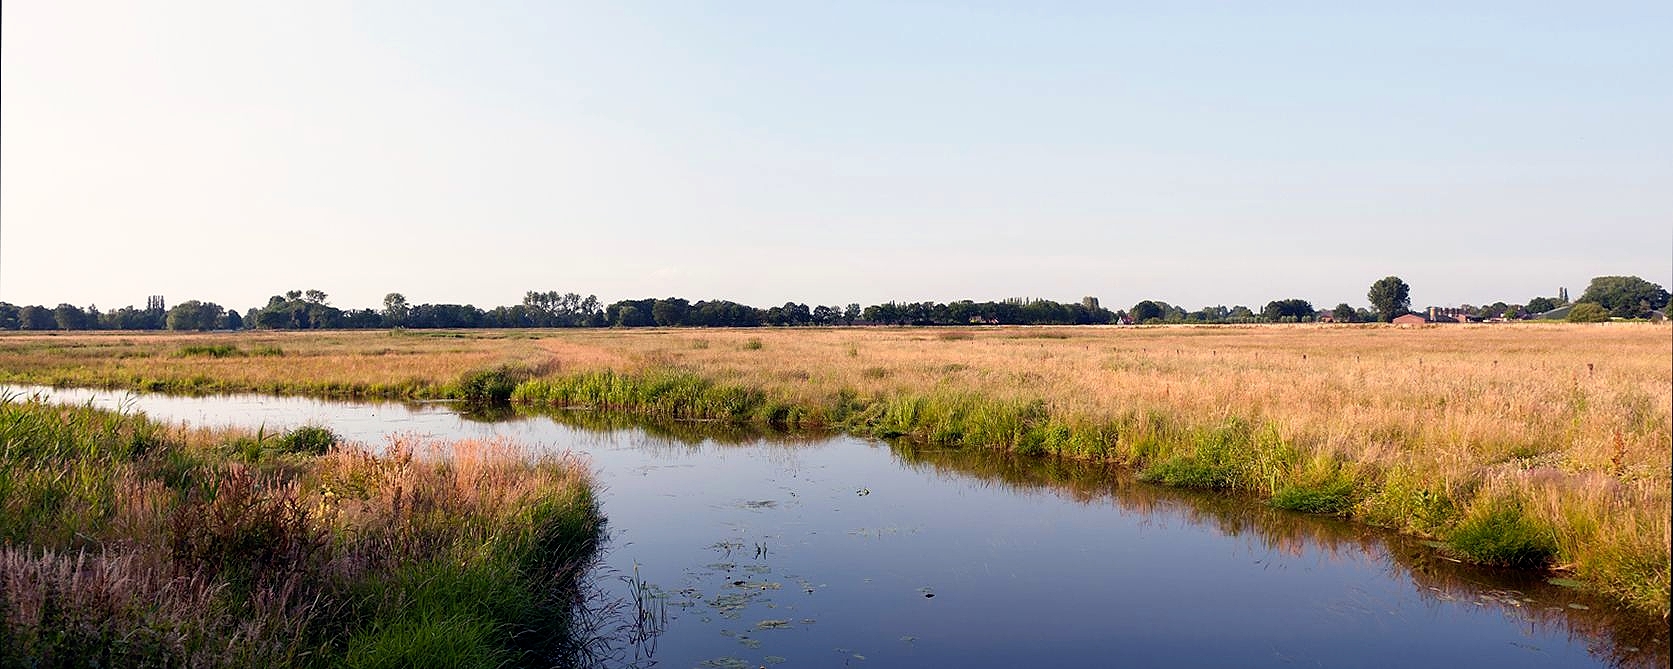 Brabant landscape